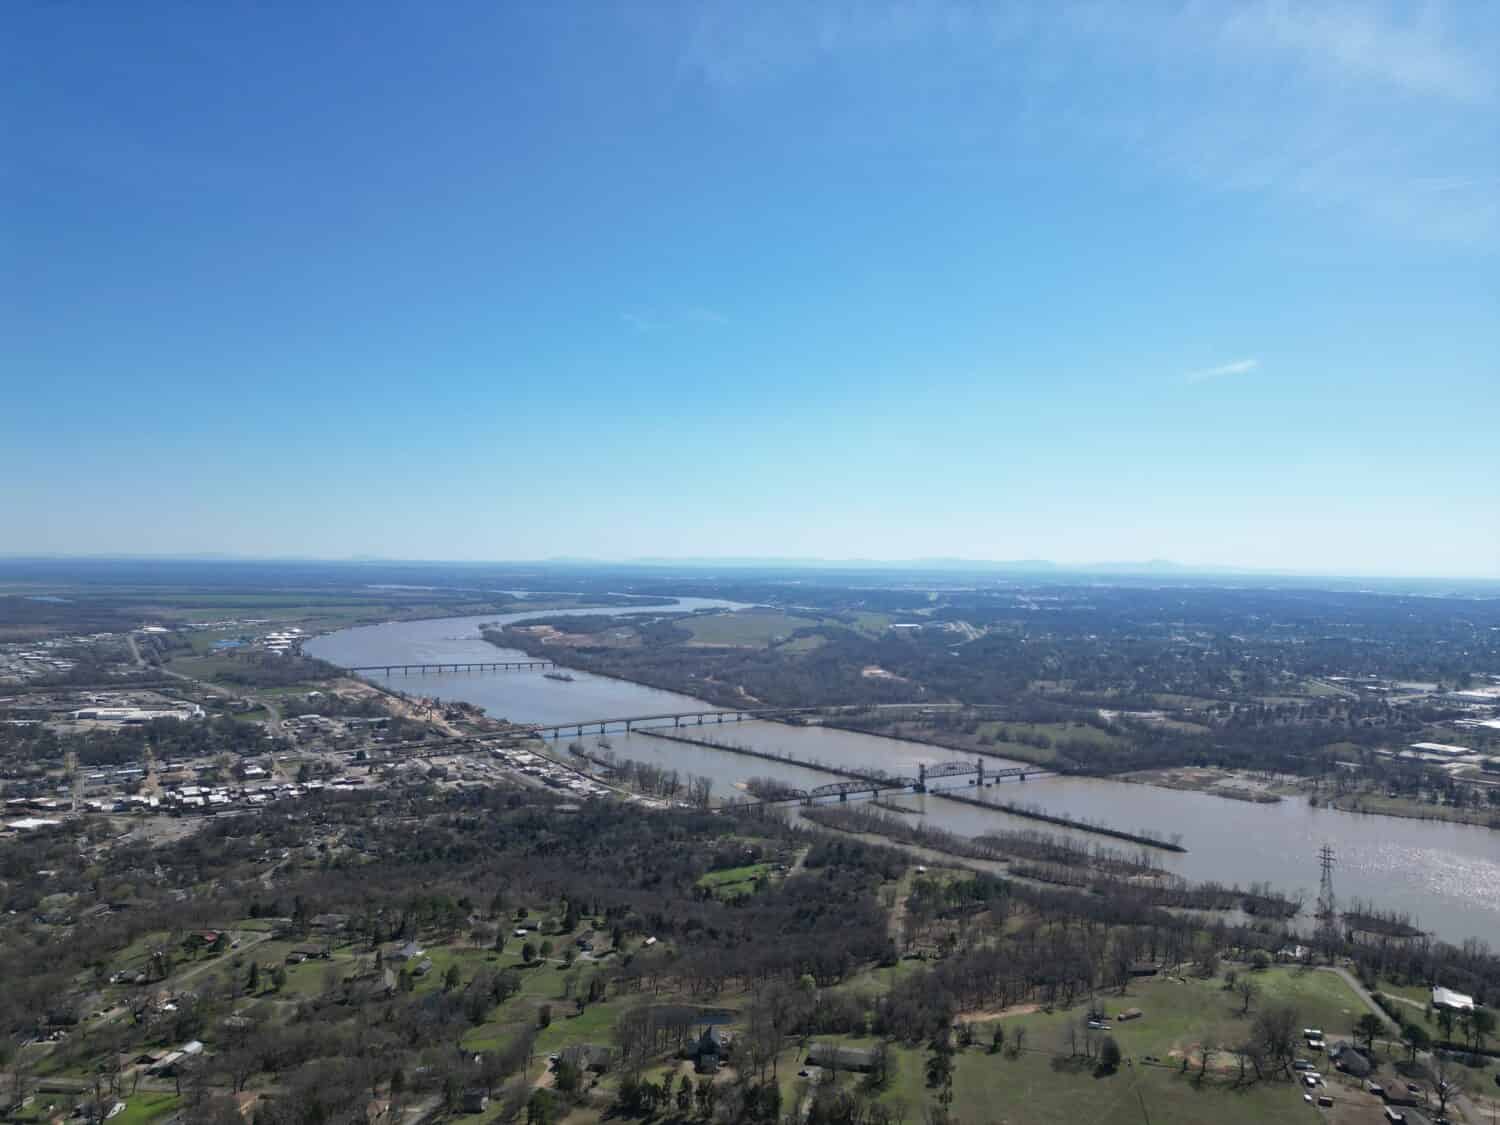 View of the Arkansas River from Mount Vista in Van Buren.  Train bridges, highway bridges, and interstate bridges into Fort Smith.